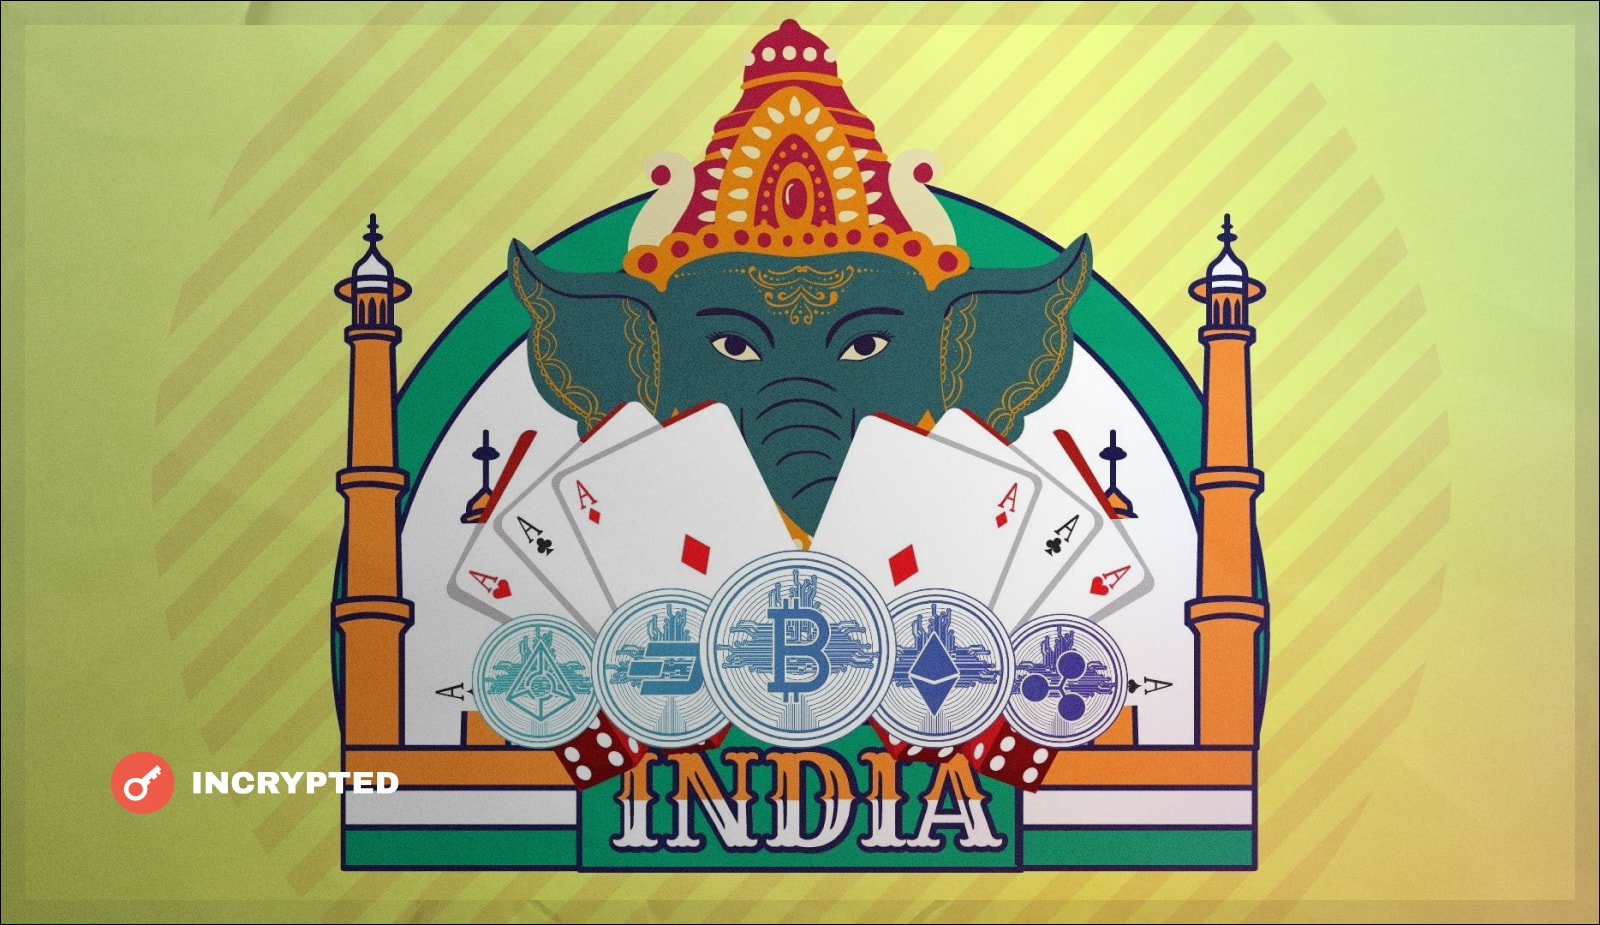 Индия продолжает давить на крипто-сферу Местные власти предлагают приравнять цифровые активы к азартным играм и увеличить налоги до 28%